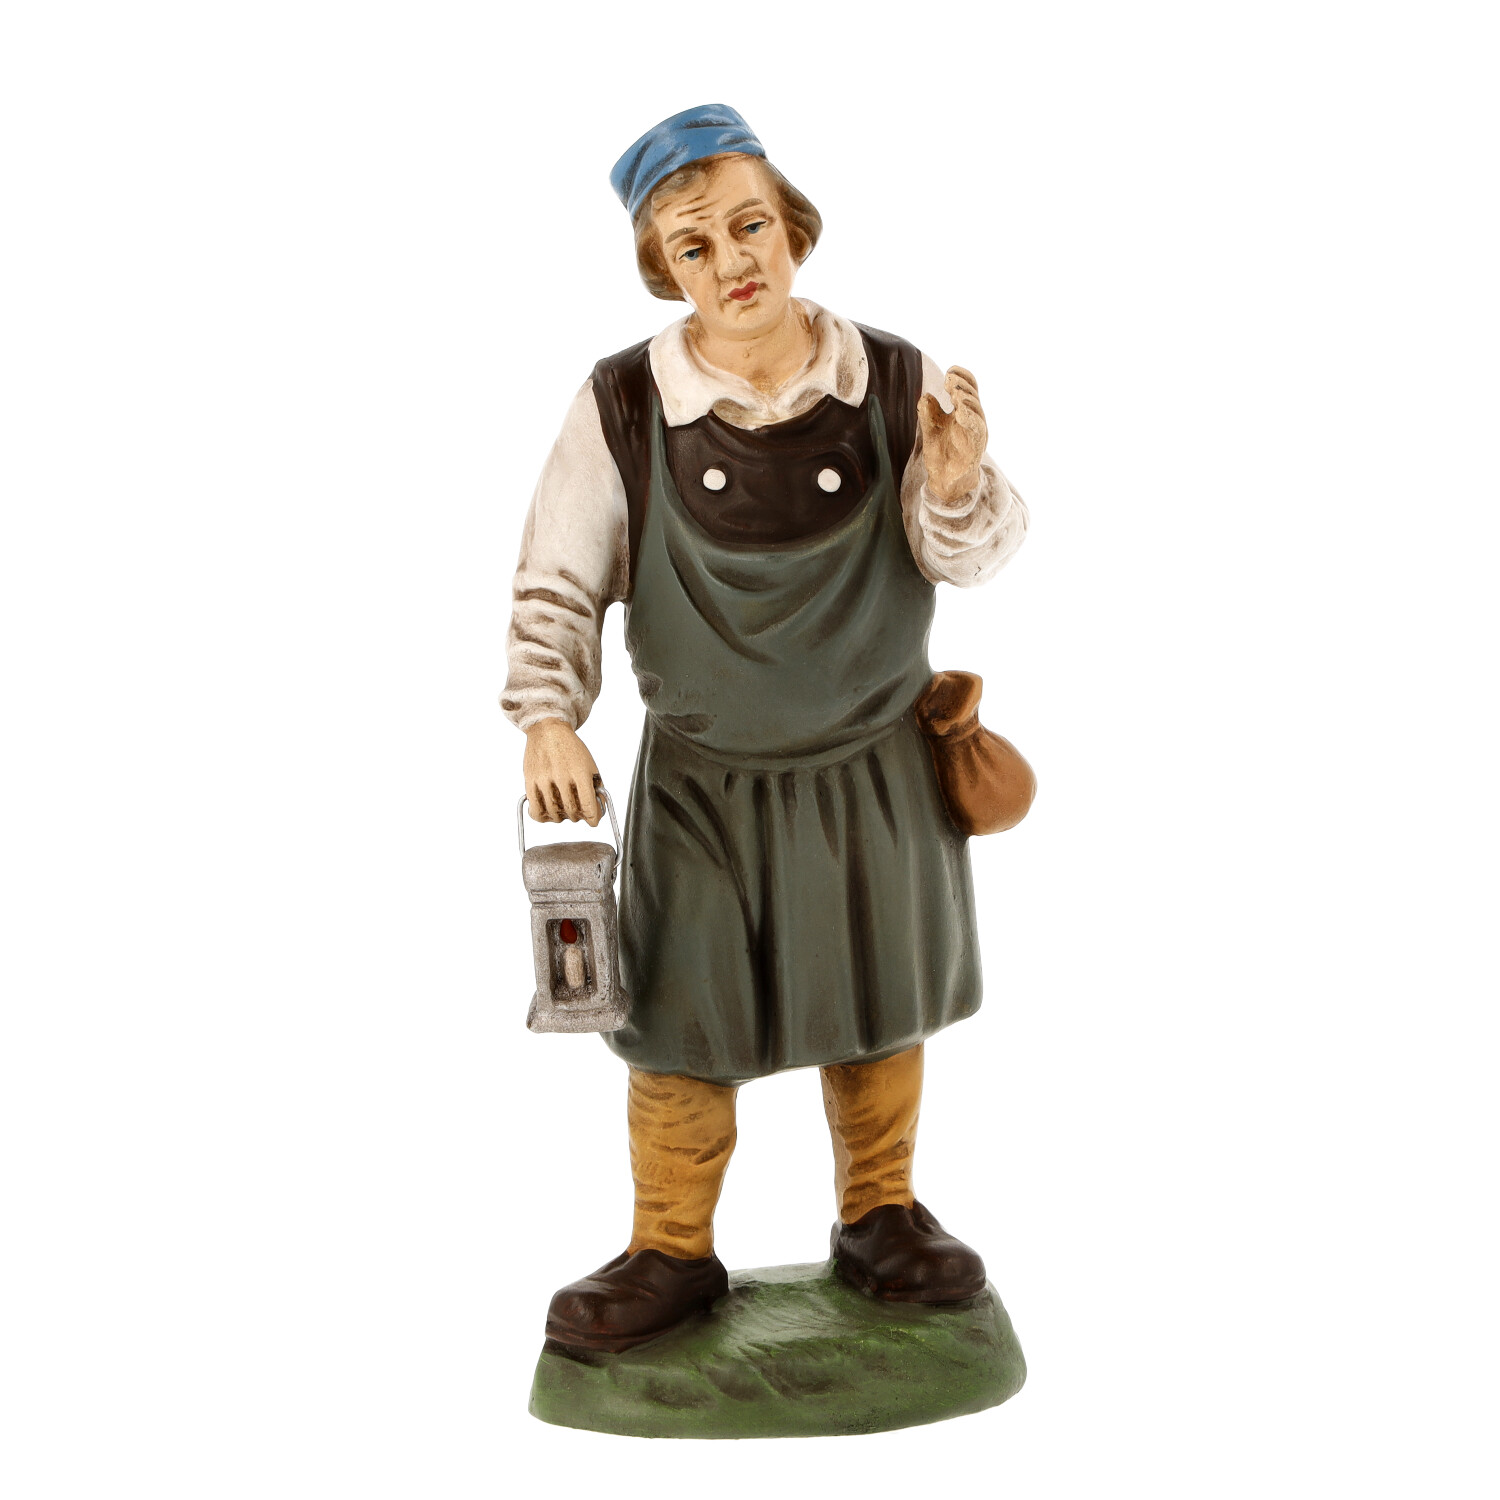 Wirt mit Laterne, zu 14cm Figuren - Marolin Krippenfigur - made in Germany